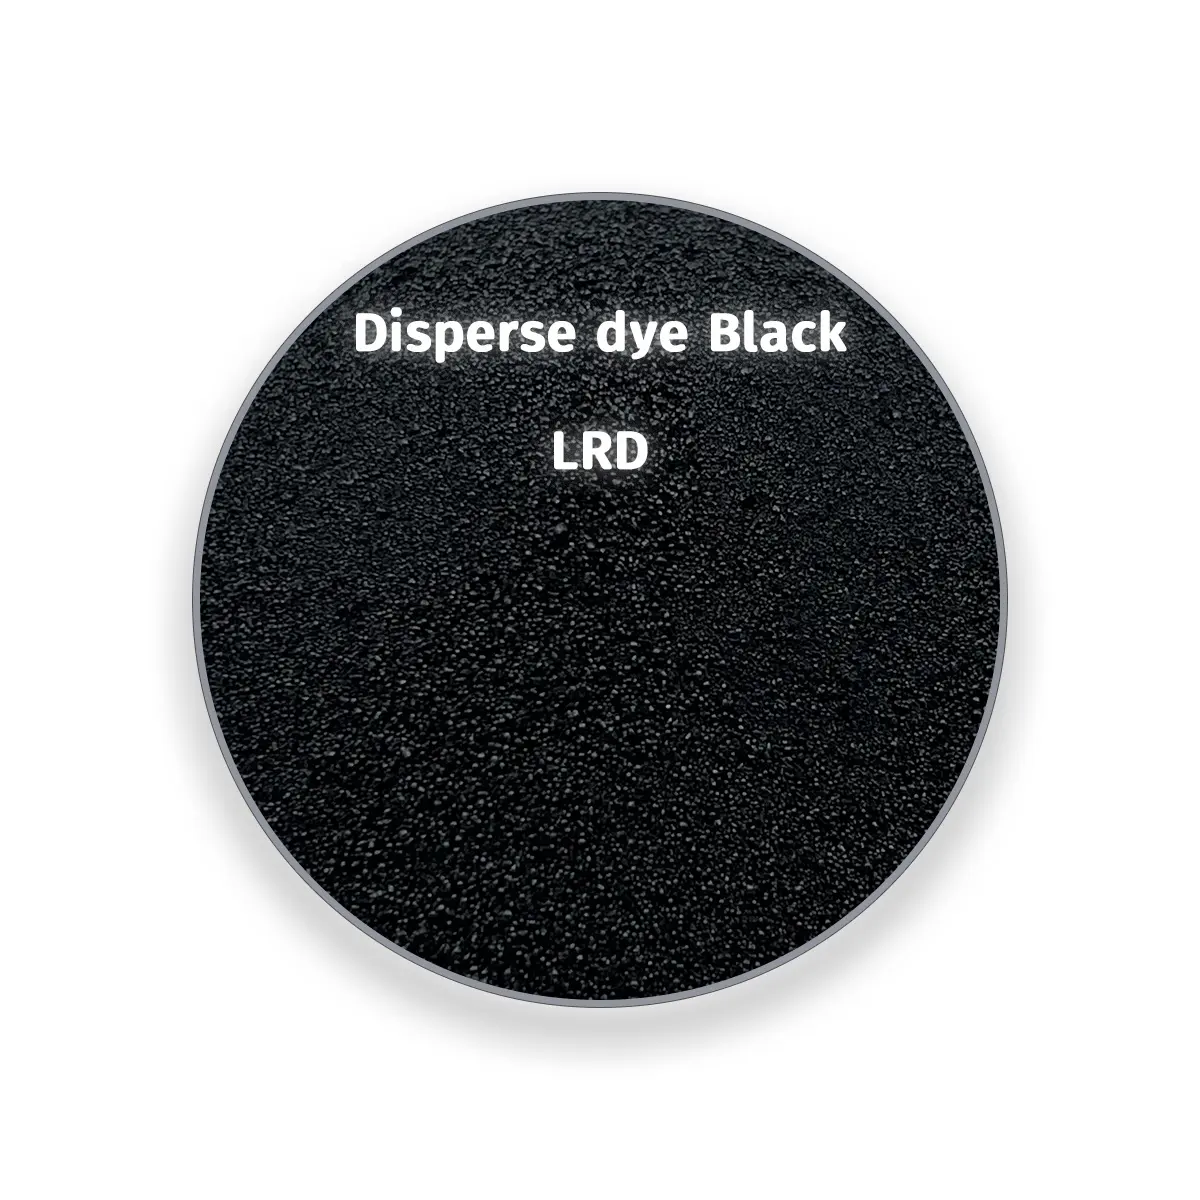 عينة شعر مستقيمة متوفرة للبيع من المصنع صبغة تشتيت أسود LRD تستخدم لصباغة البوليستر والقماش المدمج معه